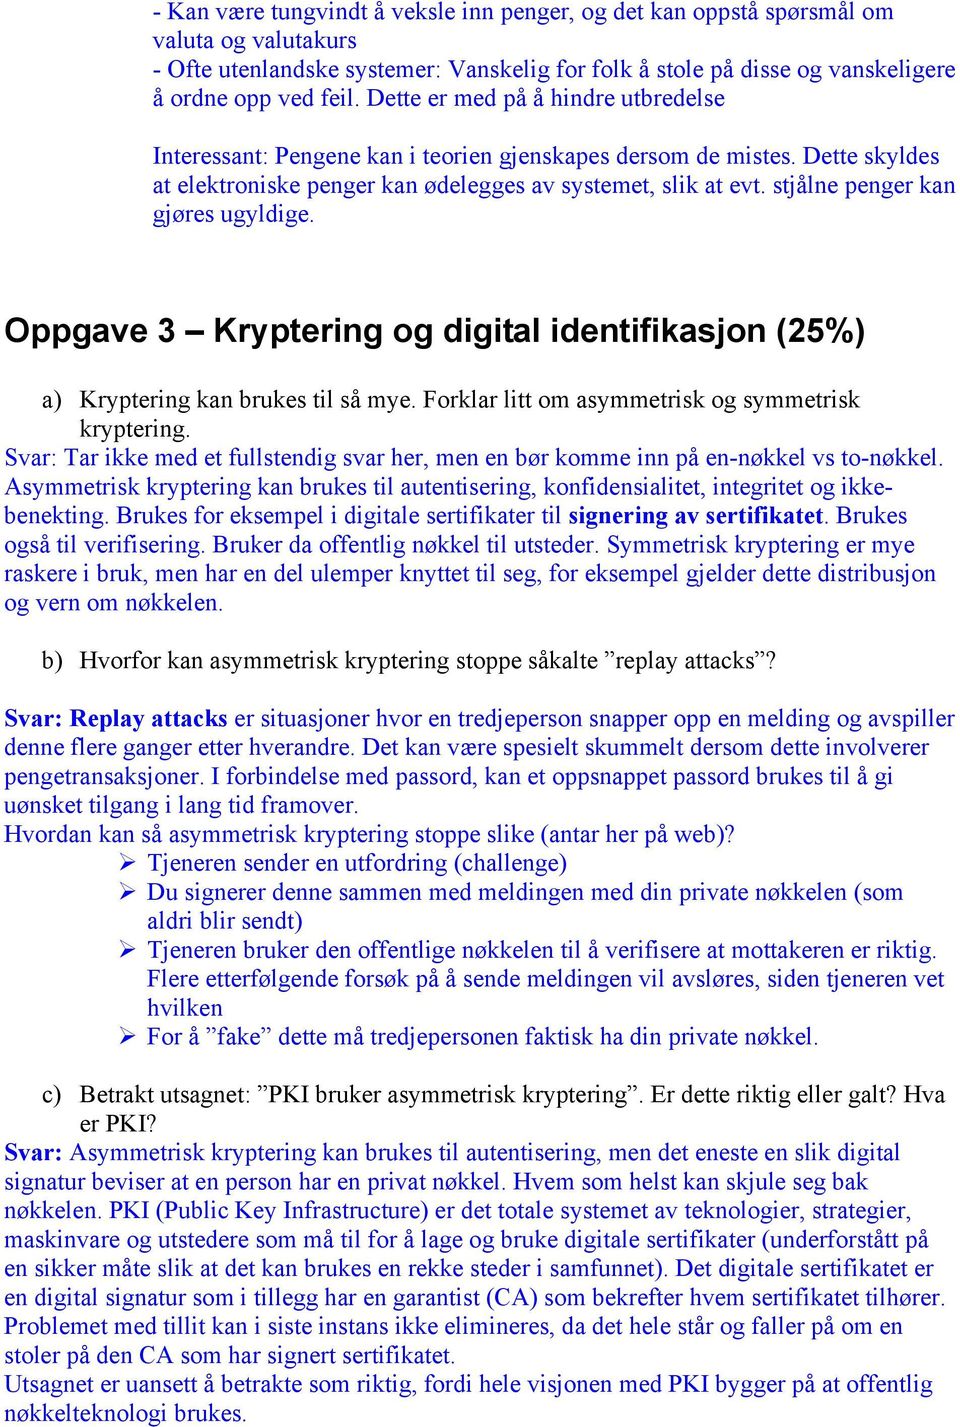 stjålne penger kan gjøres ugyldige. Oppgave 3 Kryptering og digital identifikasjon (25%) a) Kryptering kan brukes til så mye. Forklar litt om asymmetrisk og symmetrisk kryptering.